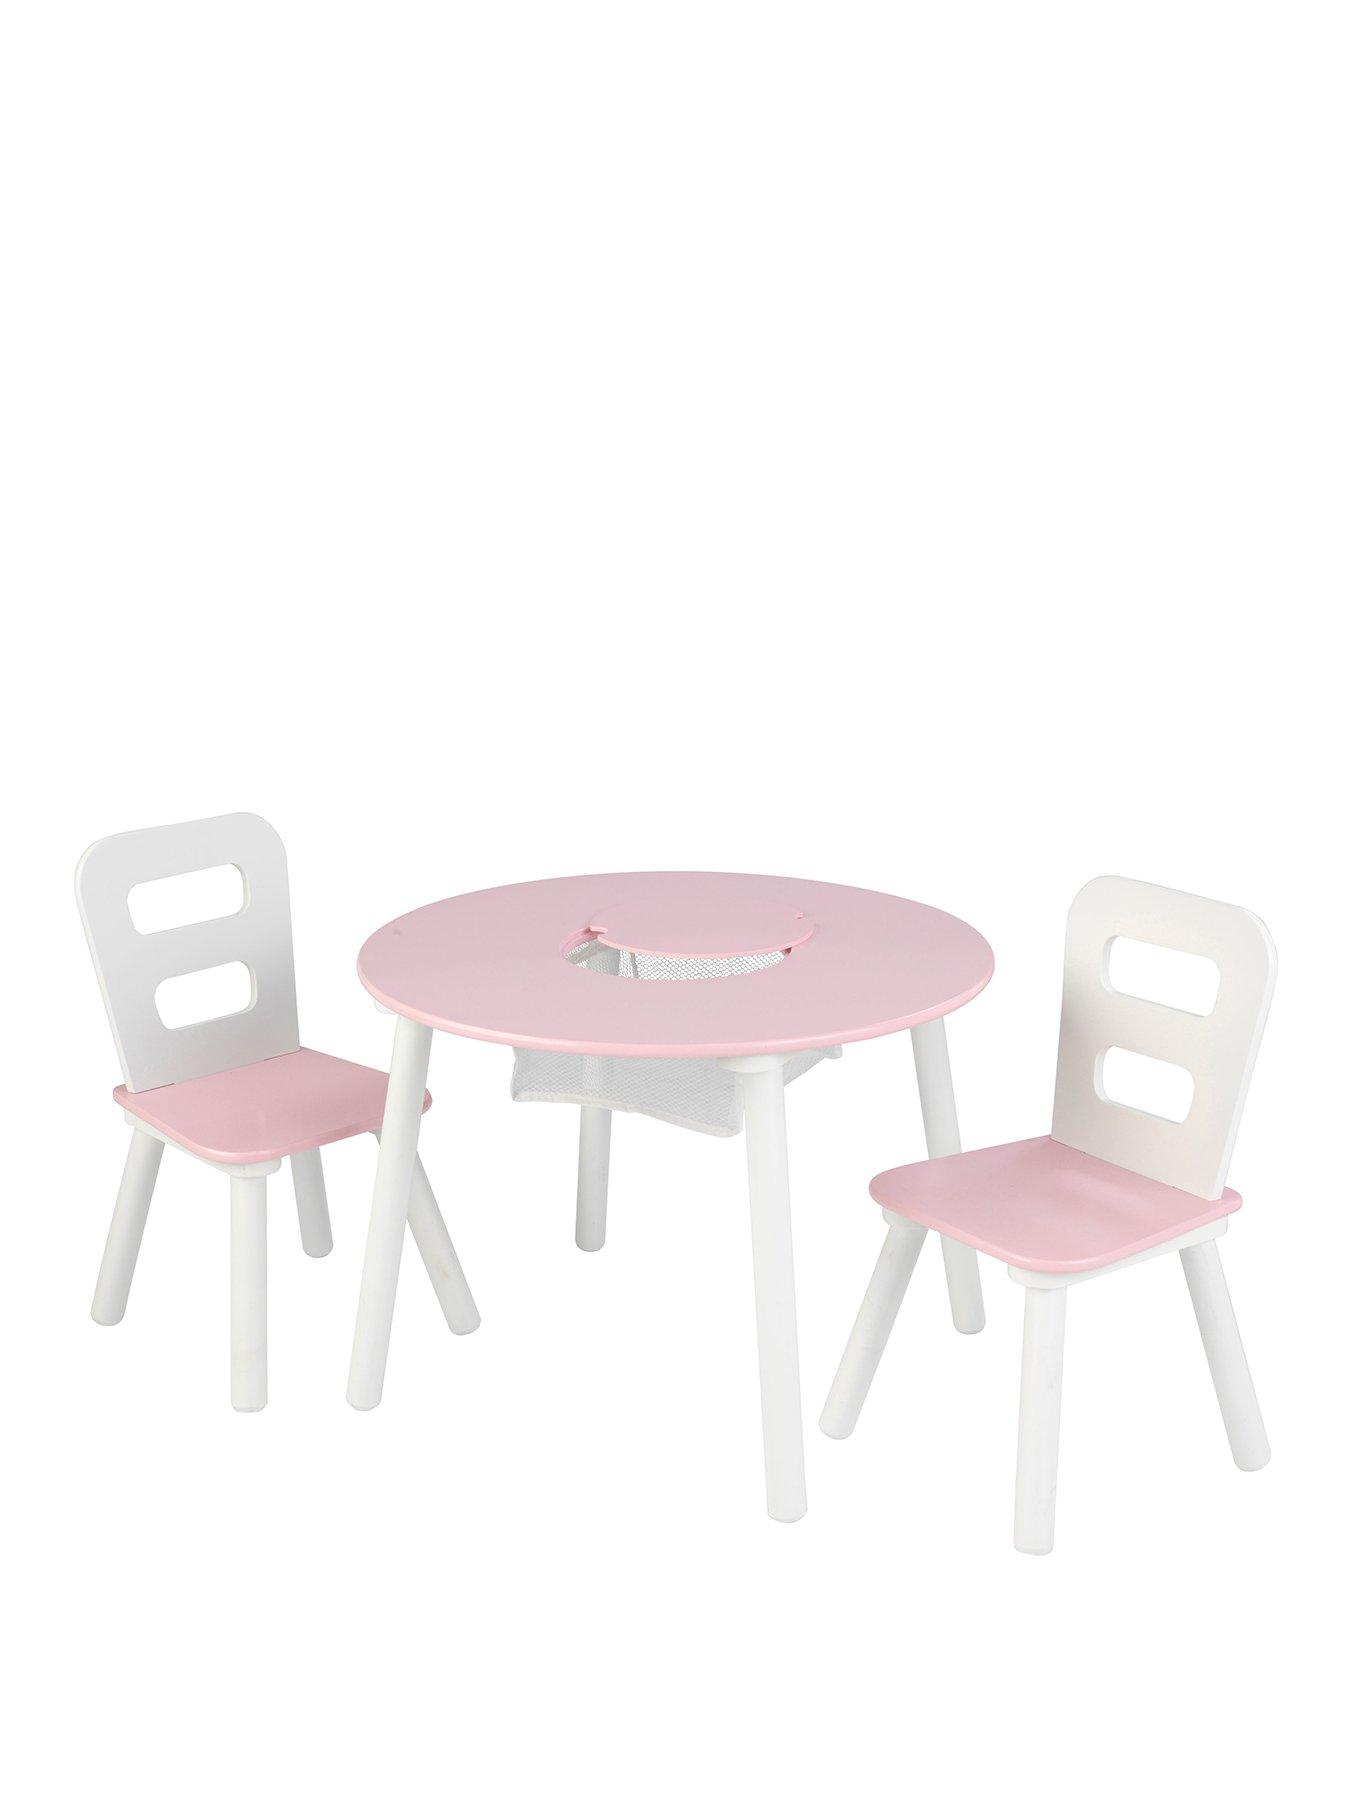 kidkraft round table